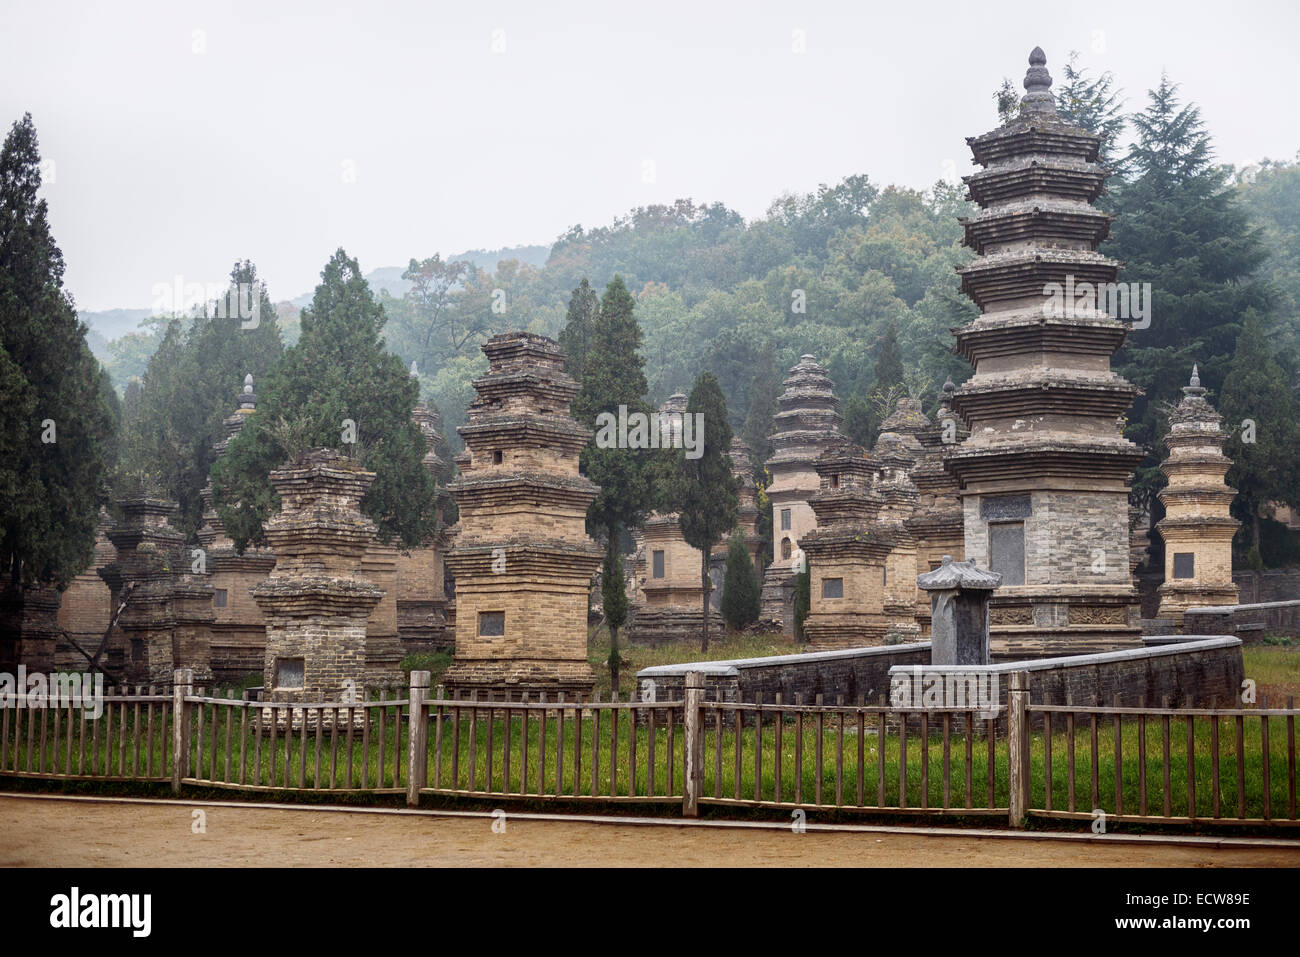 Führerschein erhältlich unter MaximImages.com - Pagodenwaldfriedhof des Shaolin-Tempels in Dengfeng, Zhengzhou, Provinz Henan, China 2014 Stockfoto